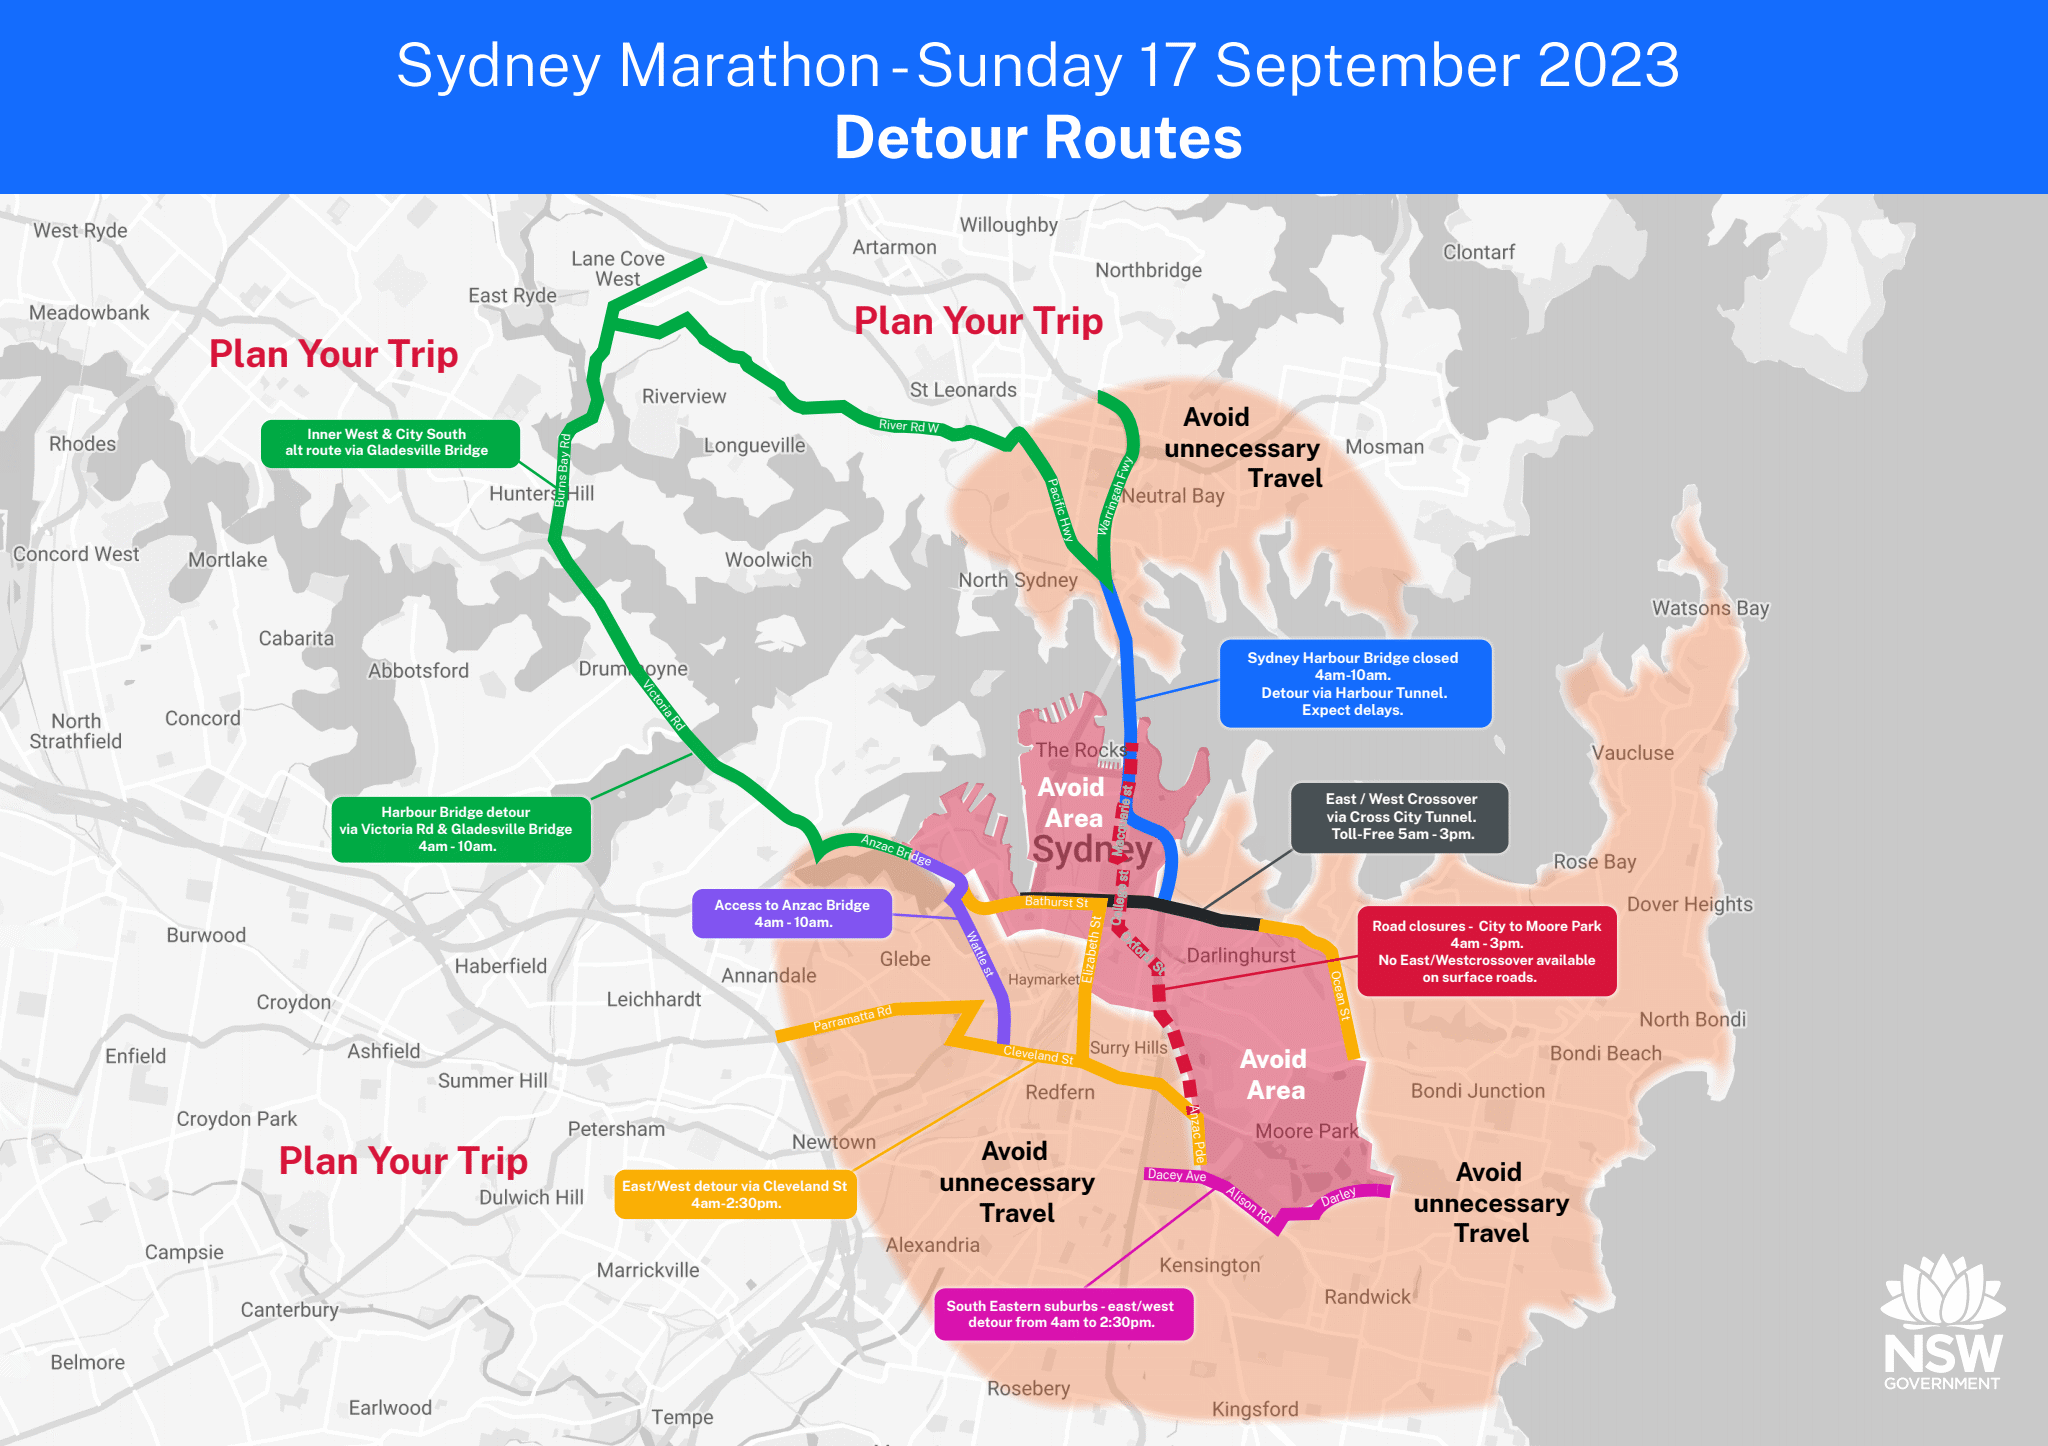 Sydney Marathon road closures